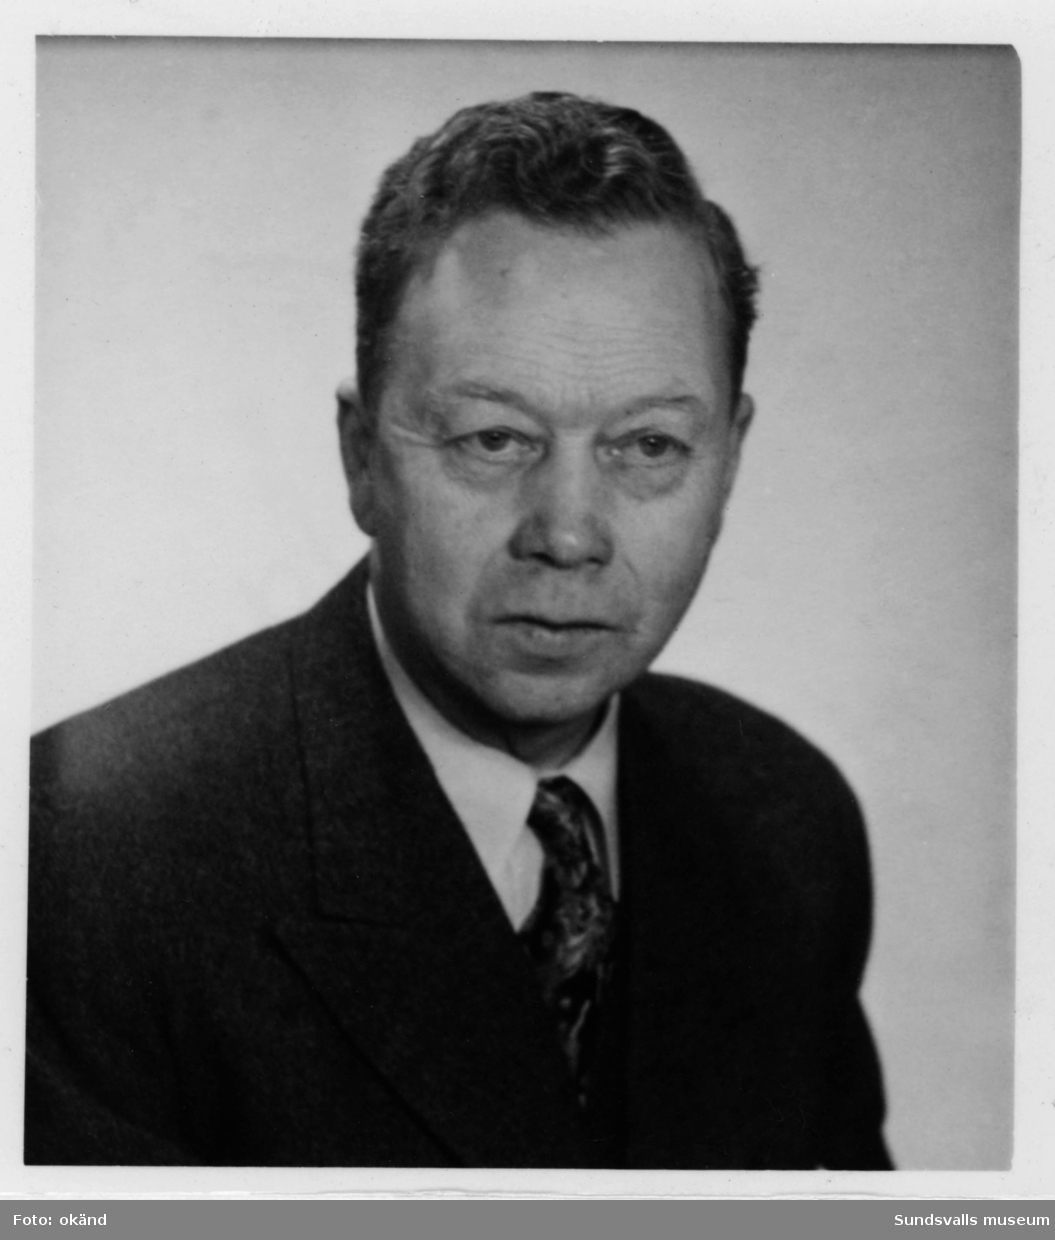 Porträtt av Viktor Larsson (1892-1977) under olika åldrar. Bedrev specerihandel i Östrand. Porträtten är tagna omkr 1909, 1948 samt 1958.